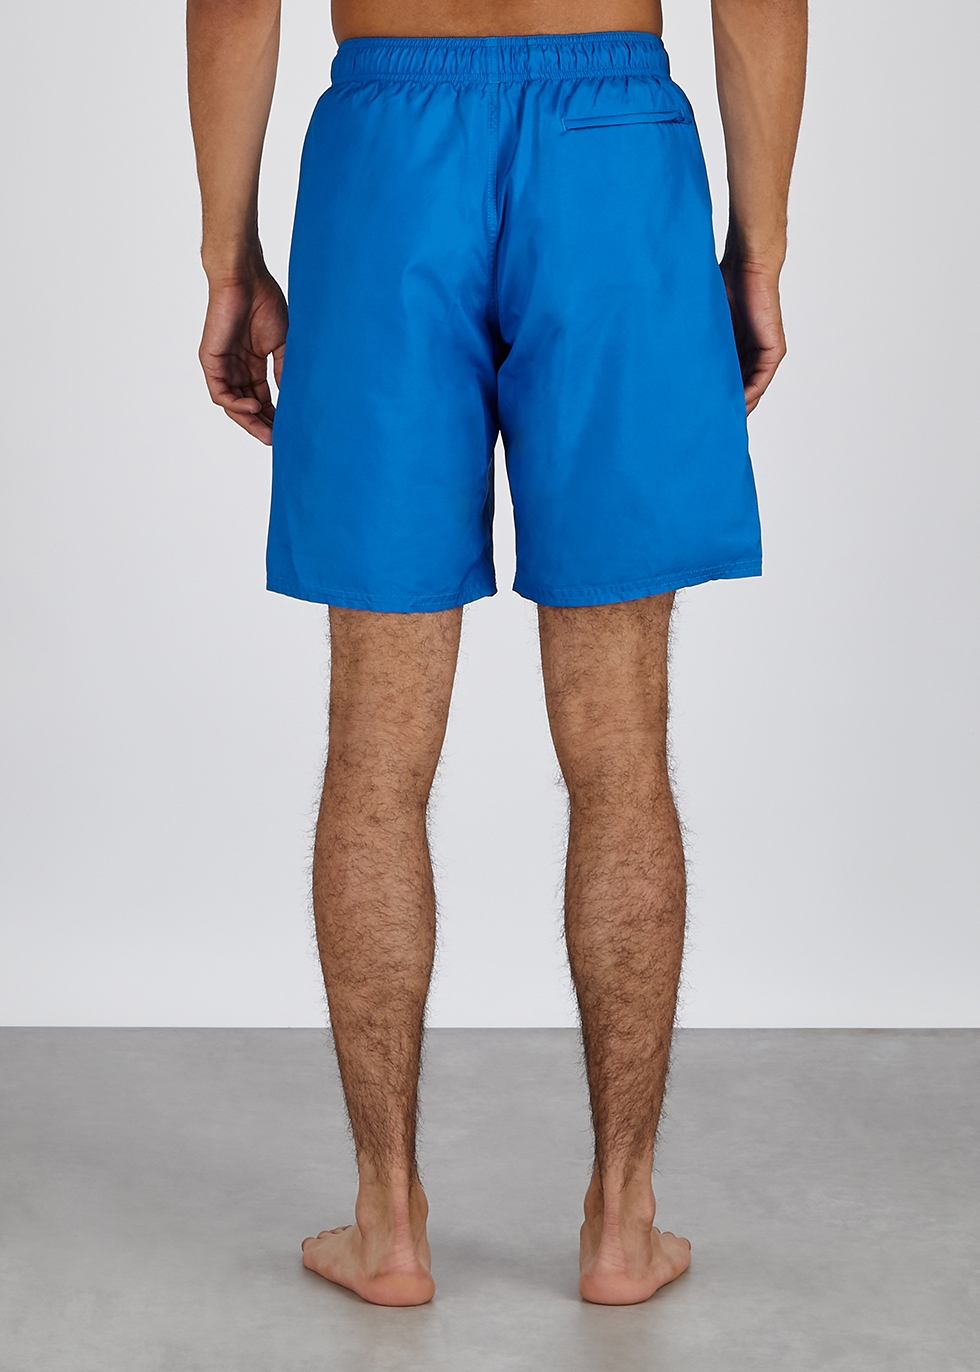 givenchy swim shorts blue